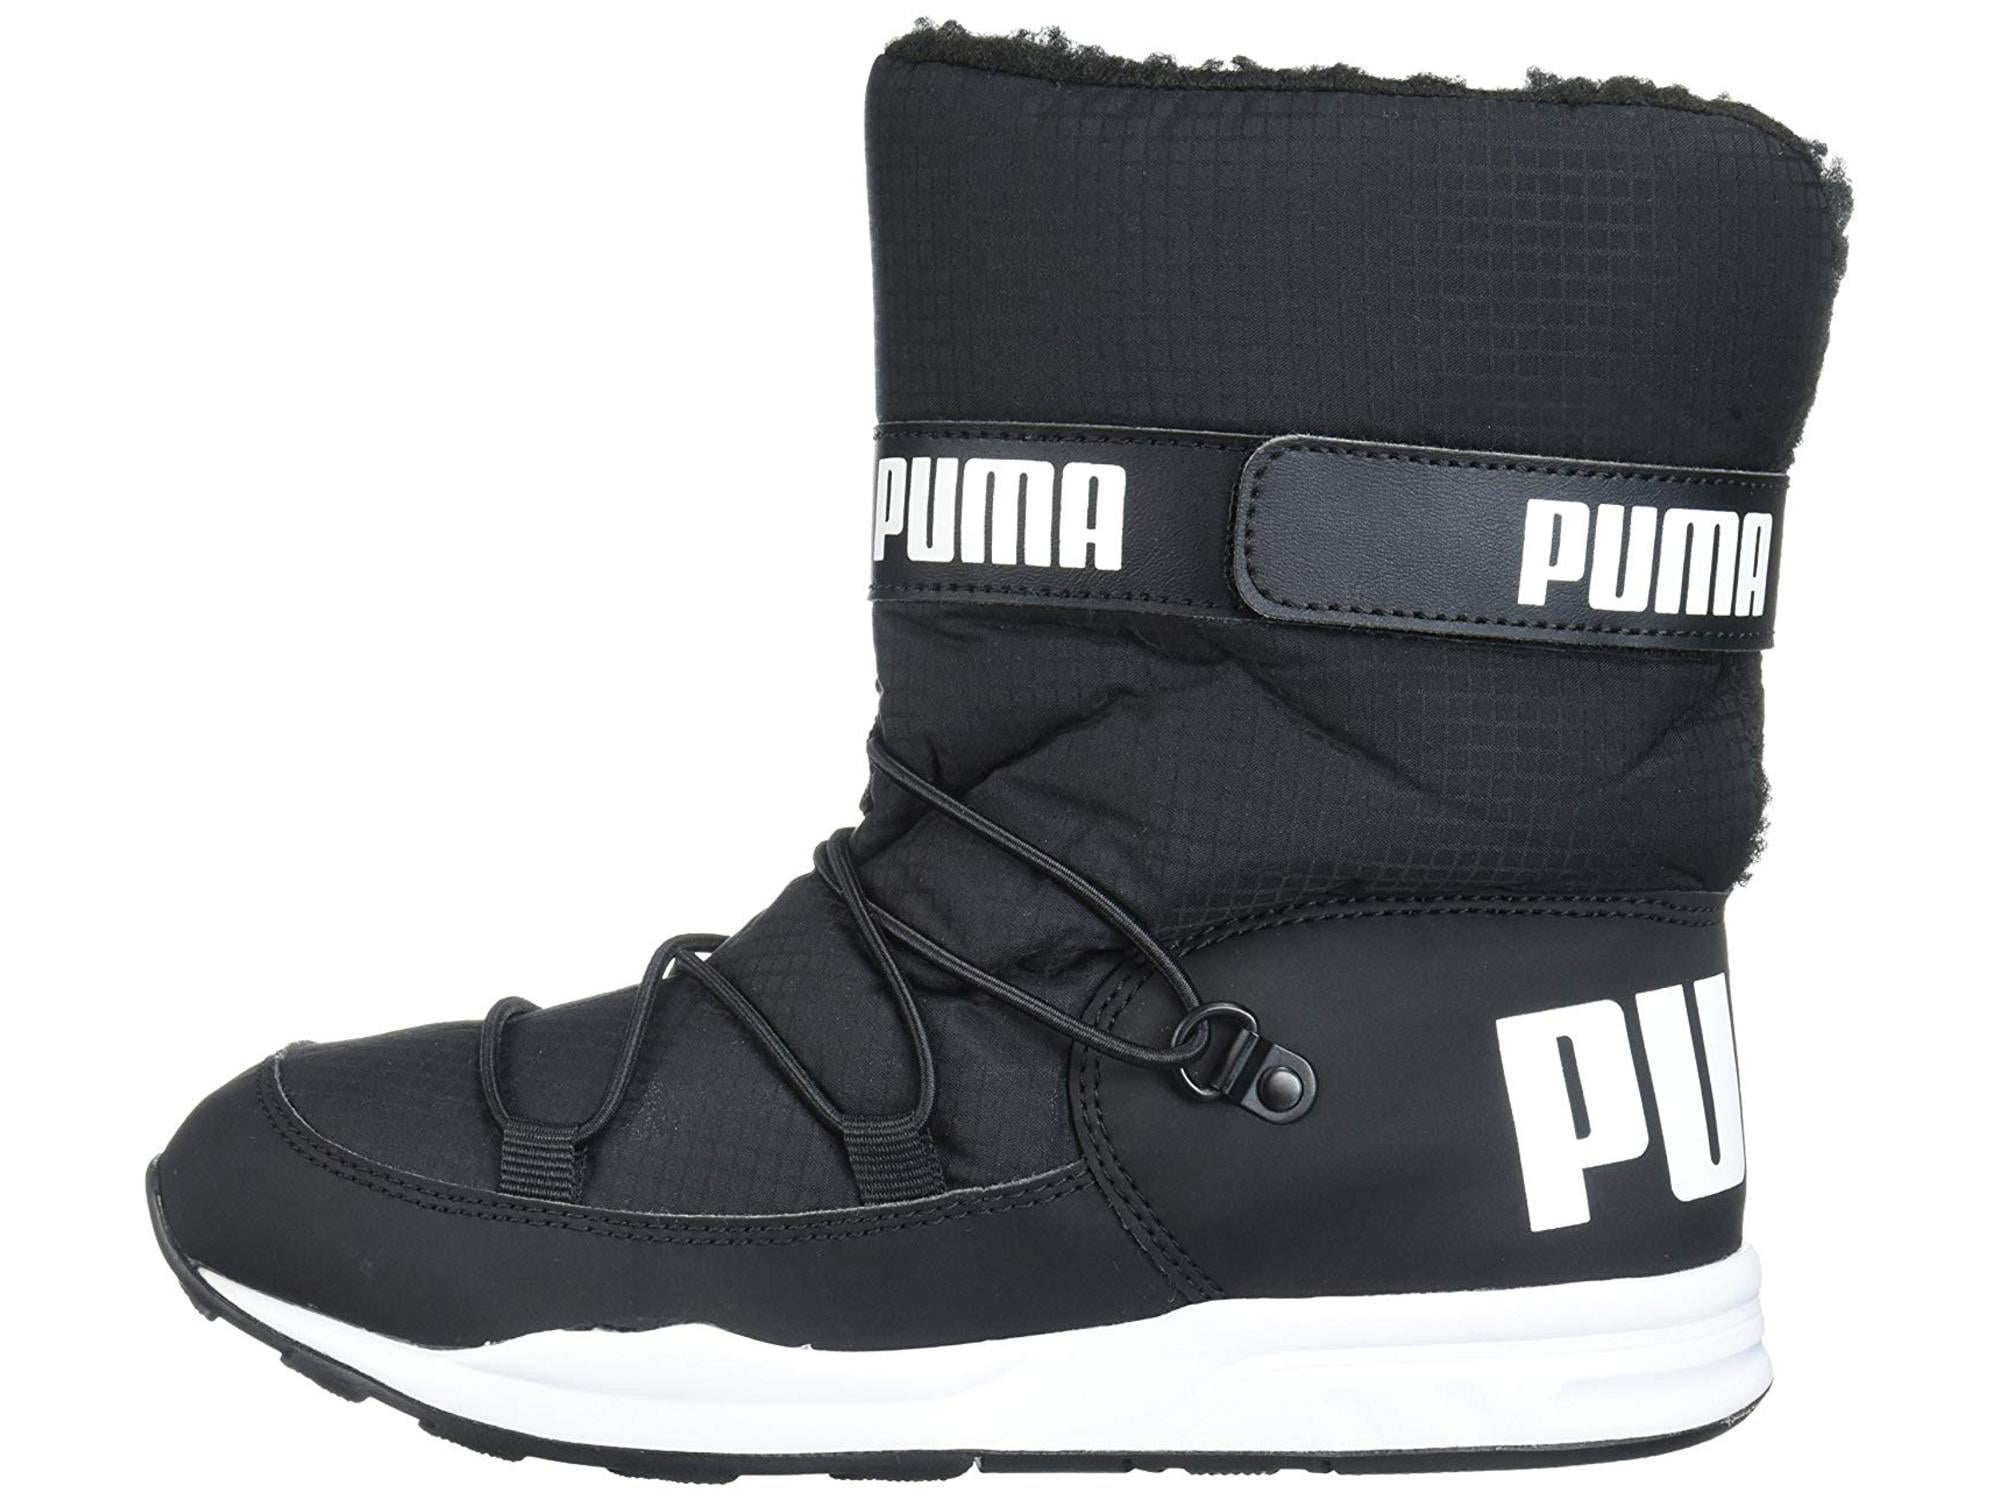 puma snow shoes